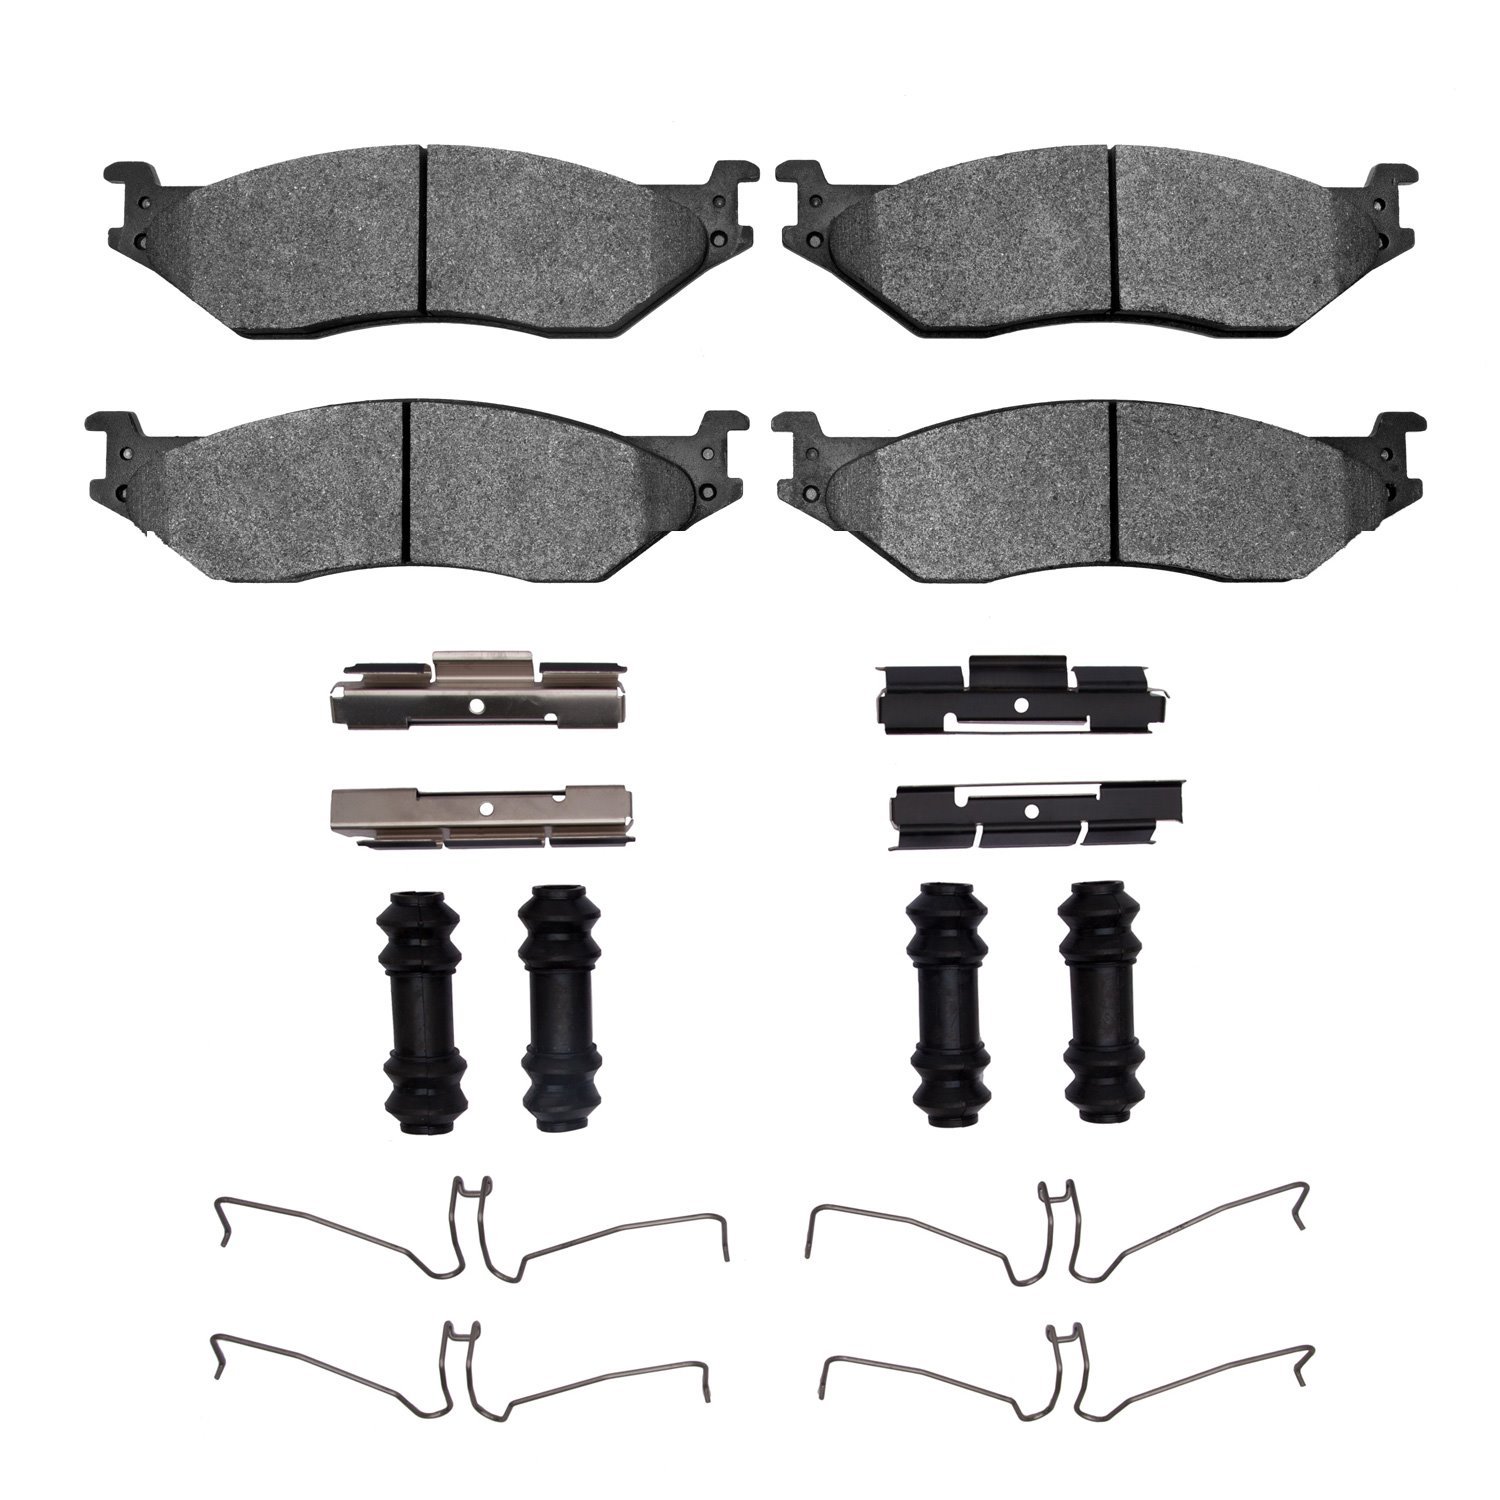 1400-1066-01 Ultimate-Duty Brake Pads & Hardware Kit, Fits Select Multiple Makes/Models, Position: Front,Fr,Fr & Rr,Rear,Rr